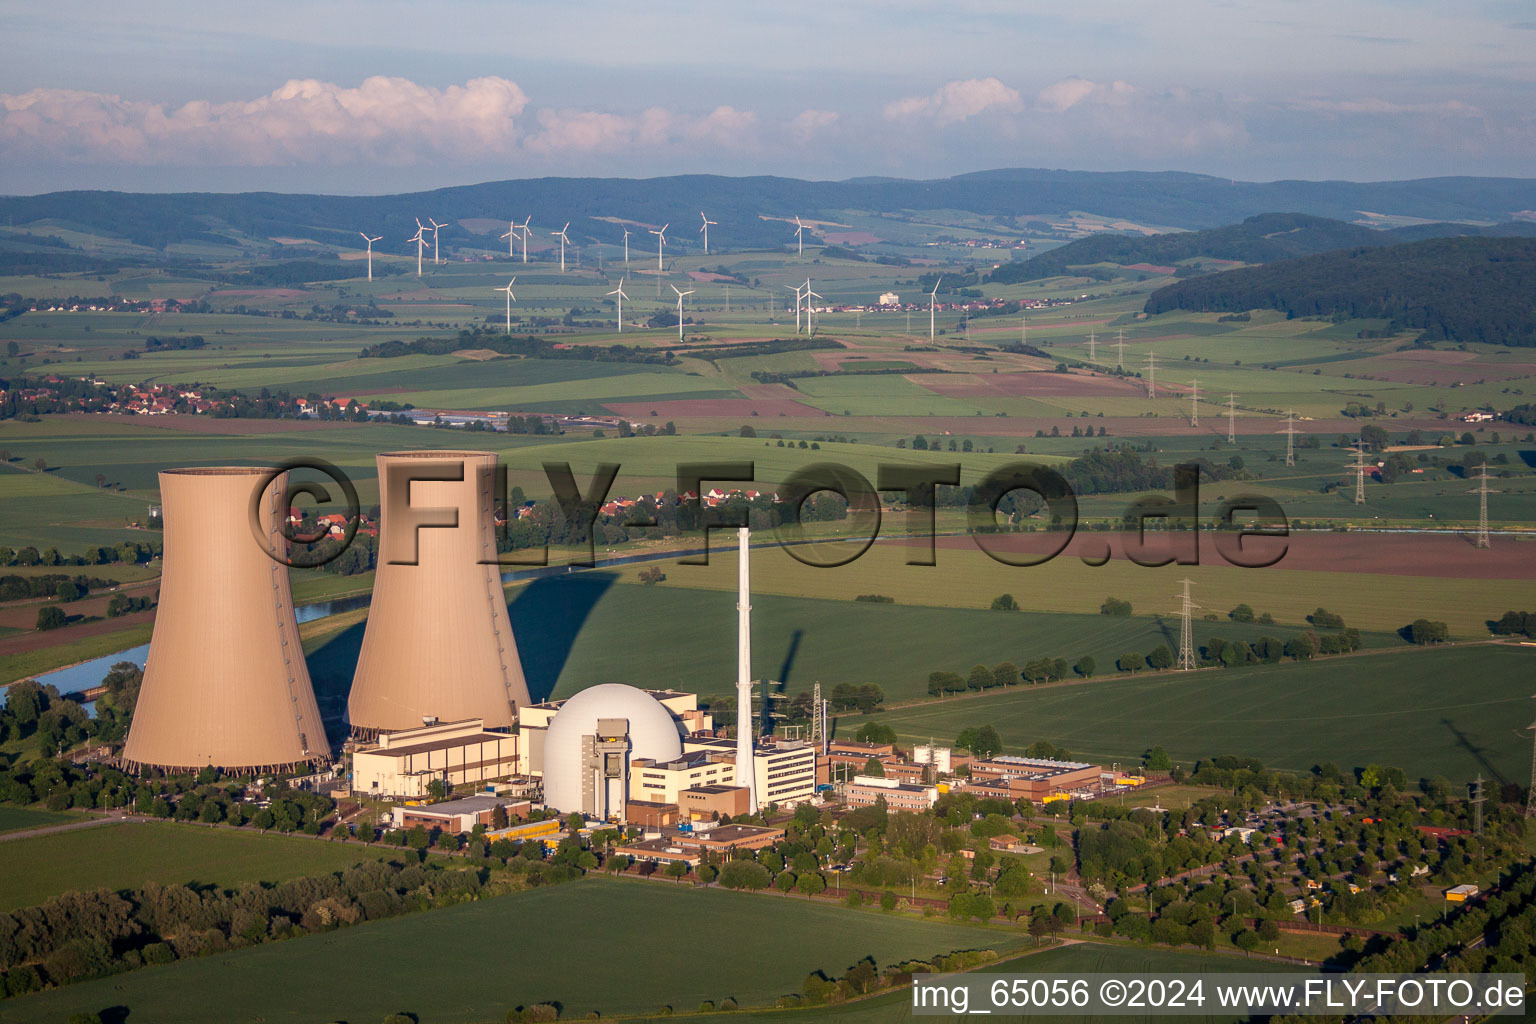 Reaktorblöcke, Kühlturmbauwerke und Anlagen des AKW - KKW Atomkraftwerk - Kernkraftwerk Grohnde in Emmerthal im Bundesland Niedersachsen, Deutschland